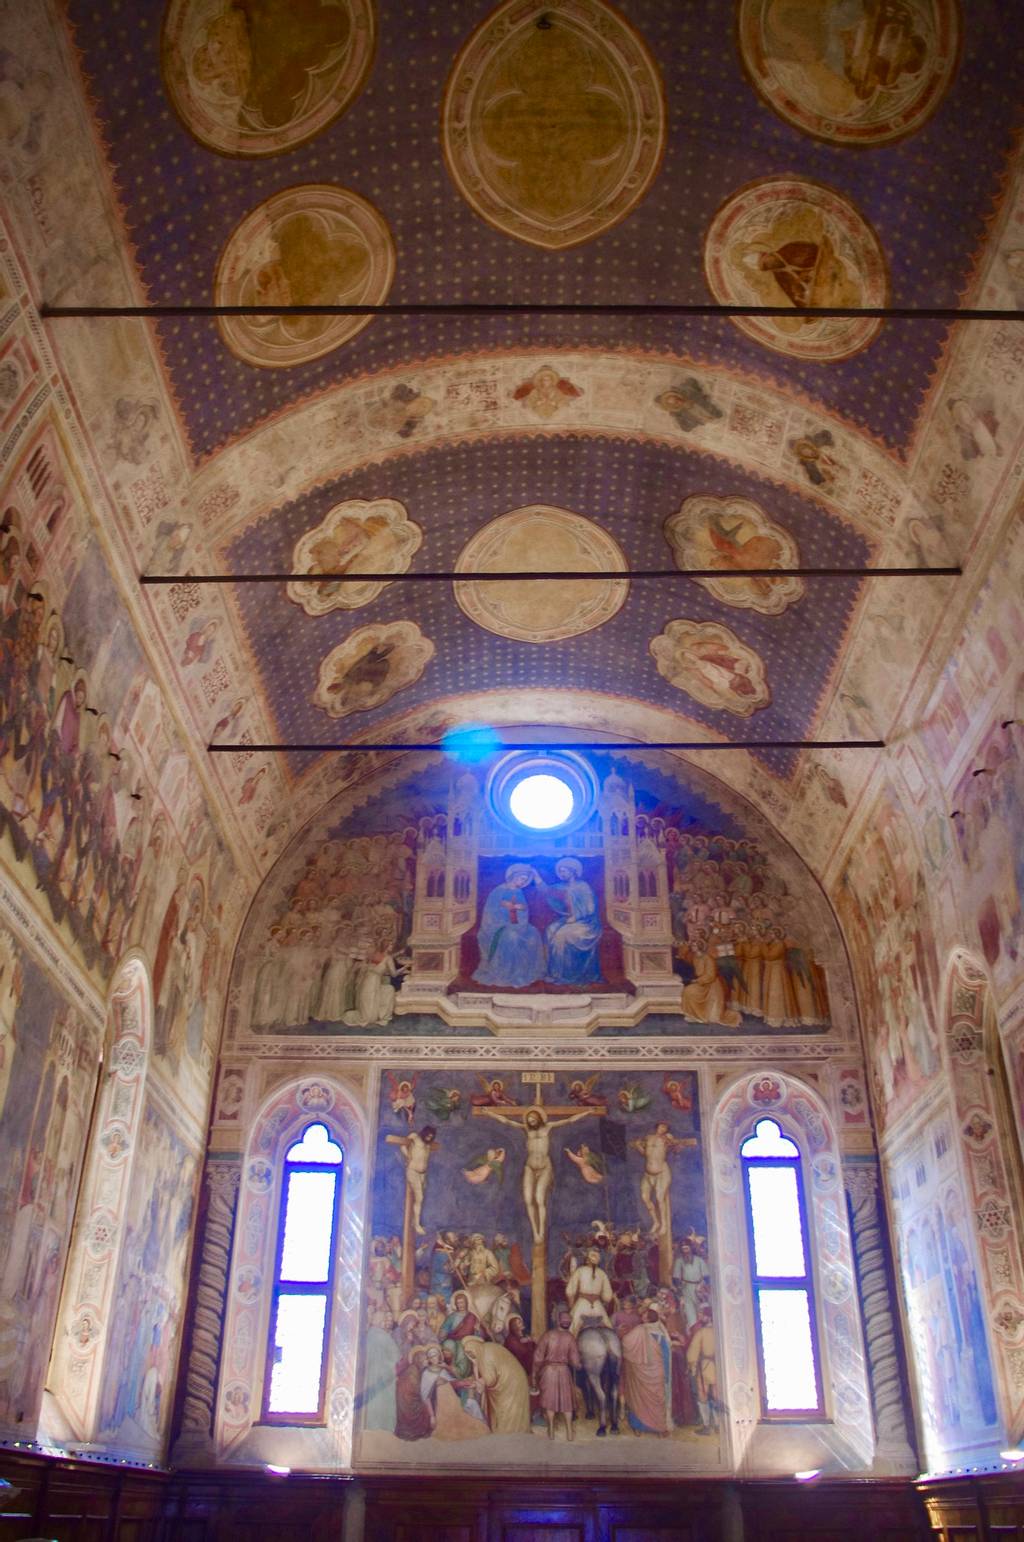 Frescoes by Altichiero of Verona, 1377